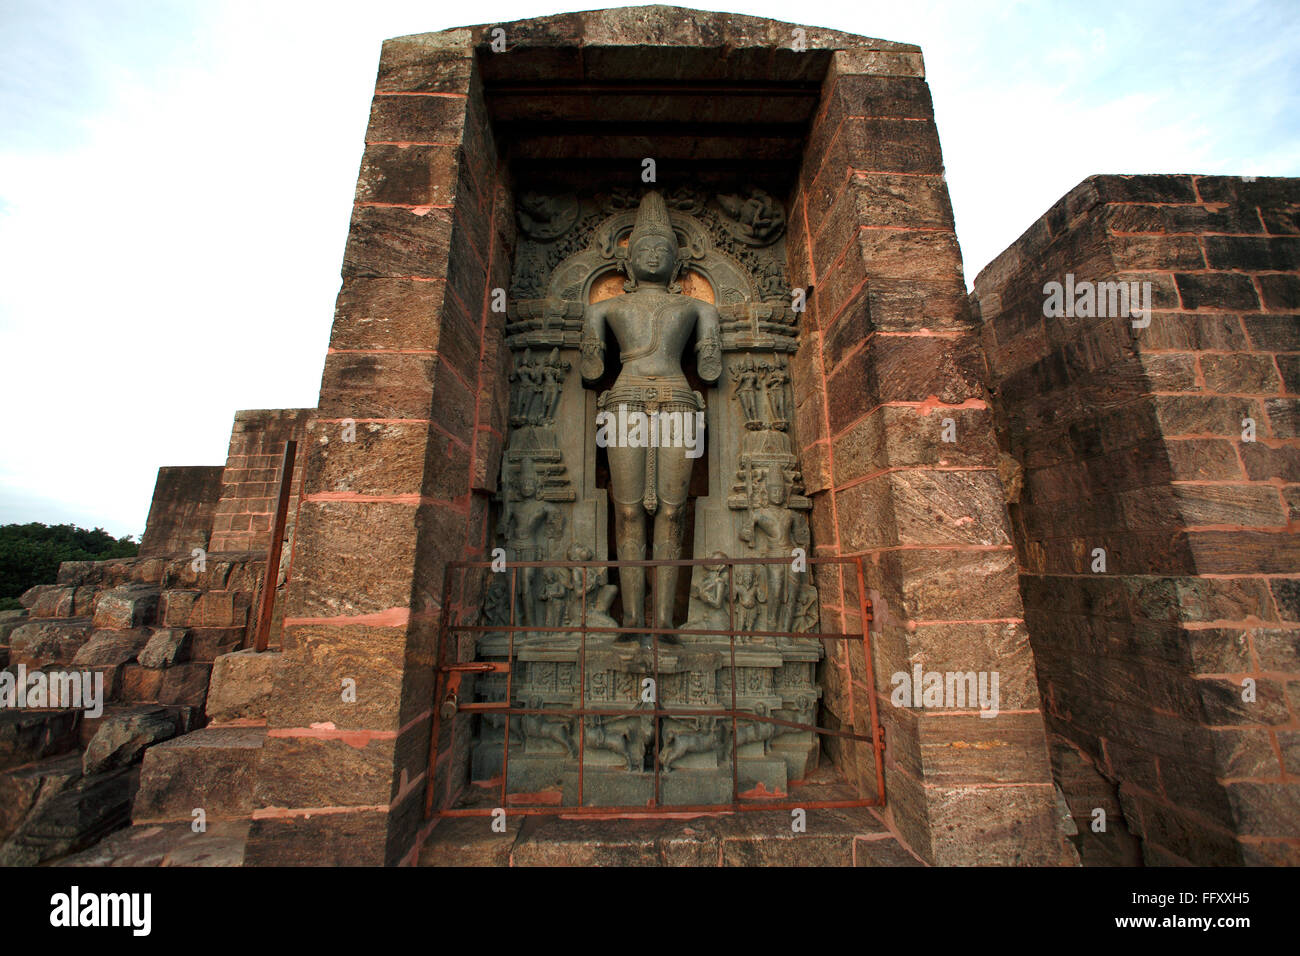 Statue of Vedic Sun god Surya or Arka at Konarak Sun temple Orissa Odisha India Unesco World Heritage site Stock Photo